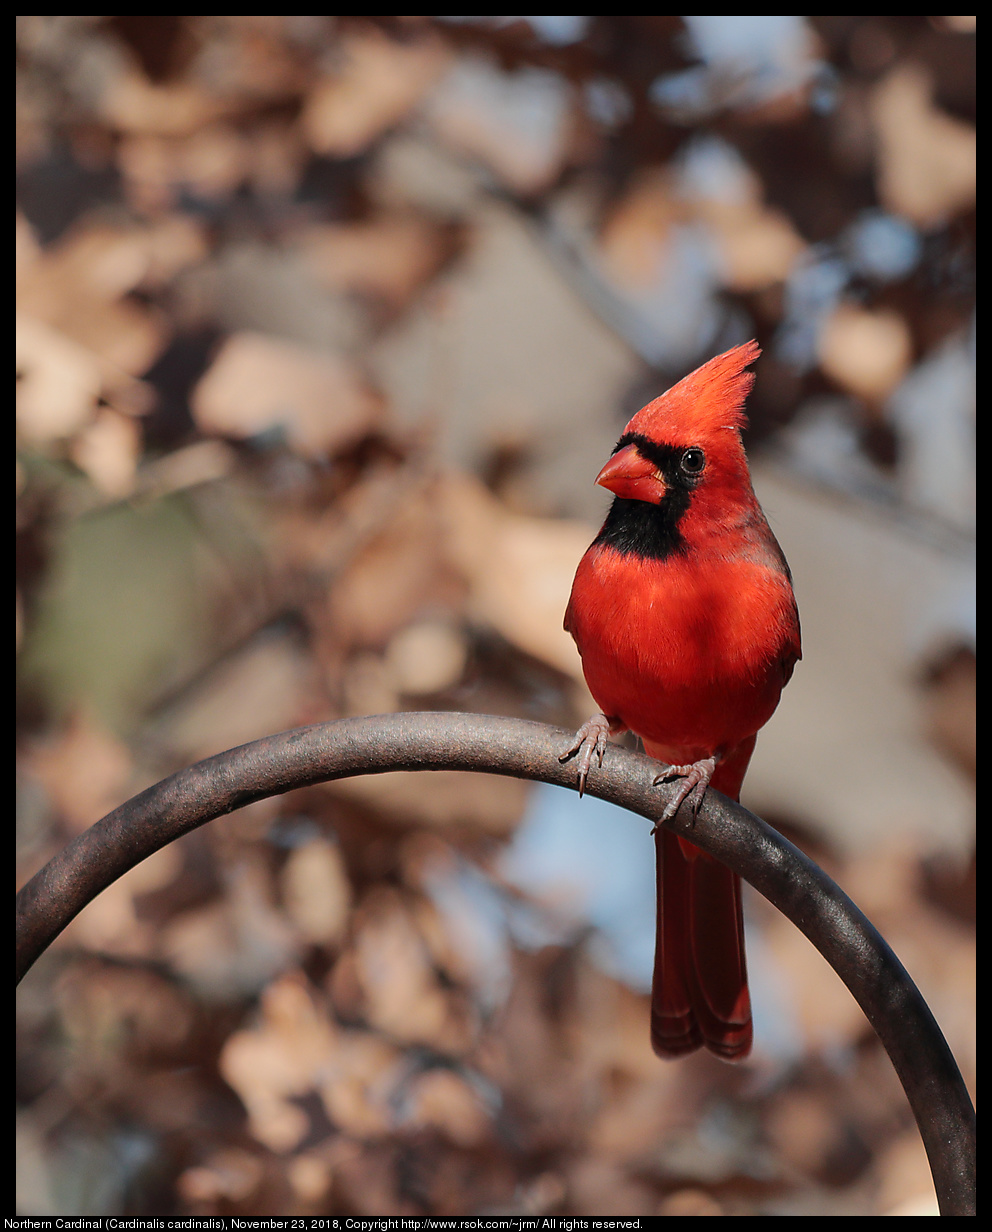 Northern Cardinal (Cardinalis cardinalis), November 23, 2018